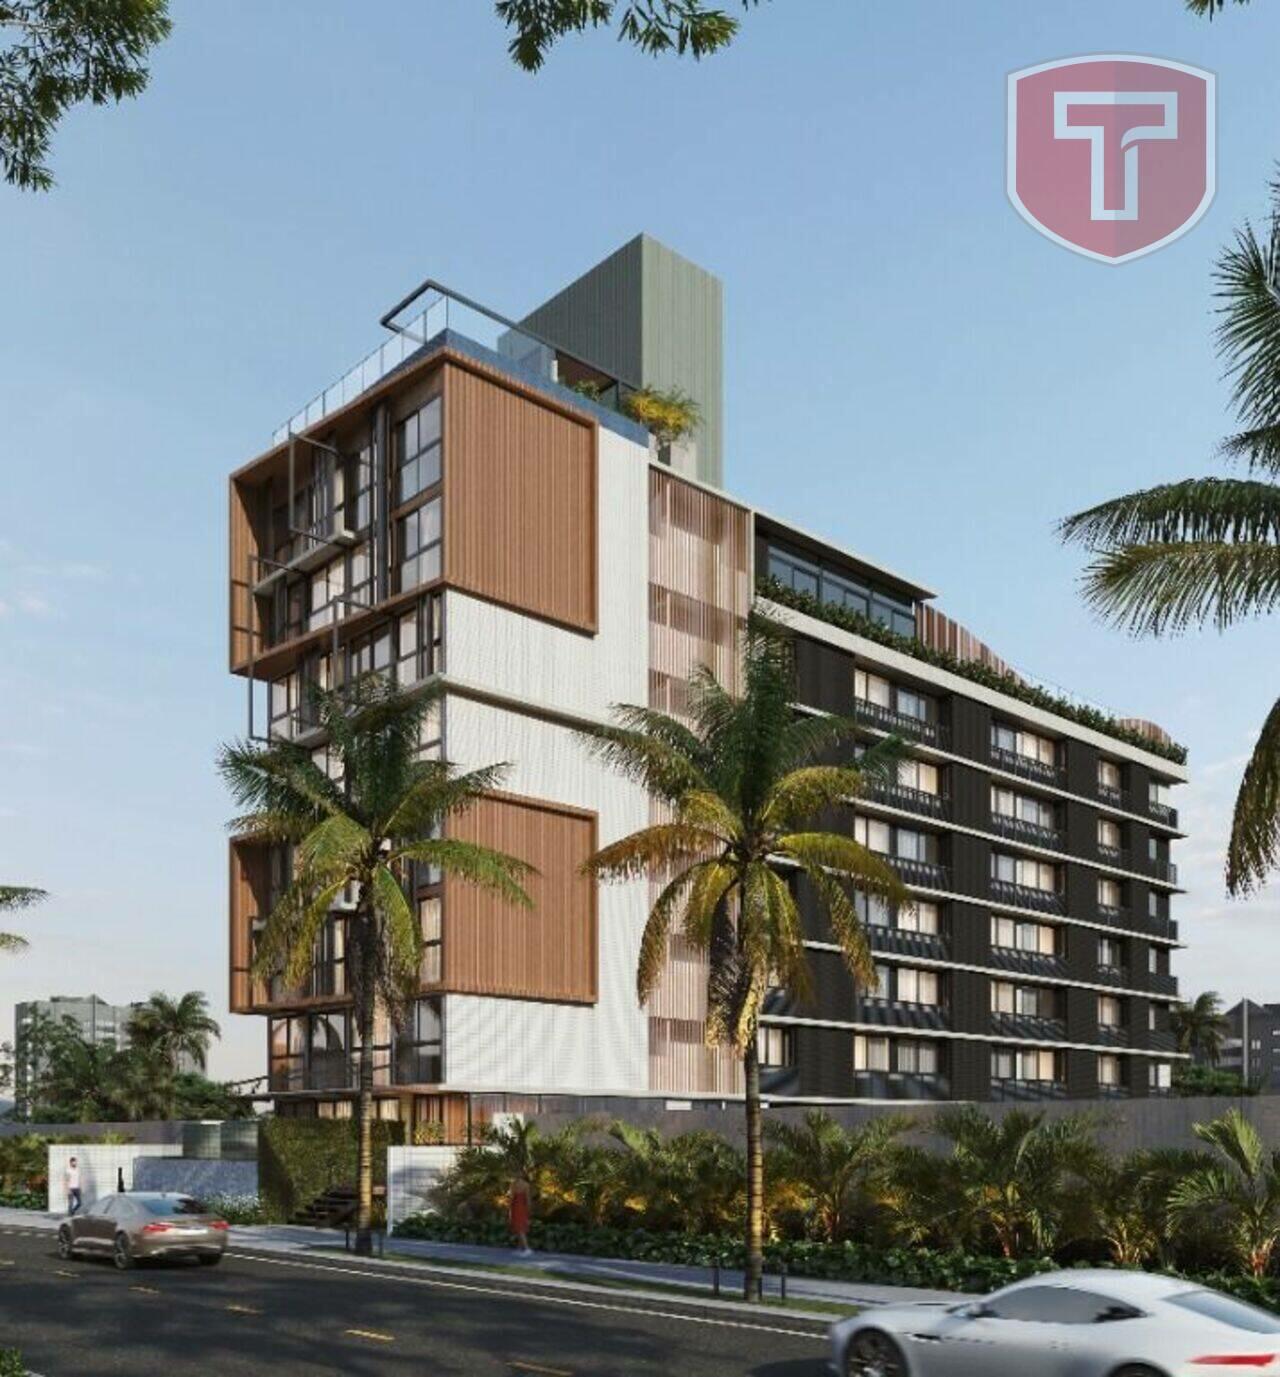 Maui Residence - Flat com 1 dormitório à venda - Jardim Oceania, João Pessoa/PB